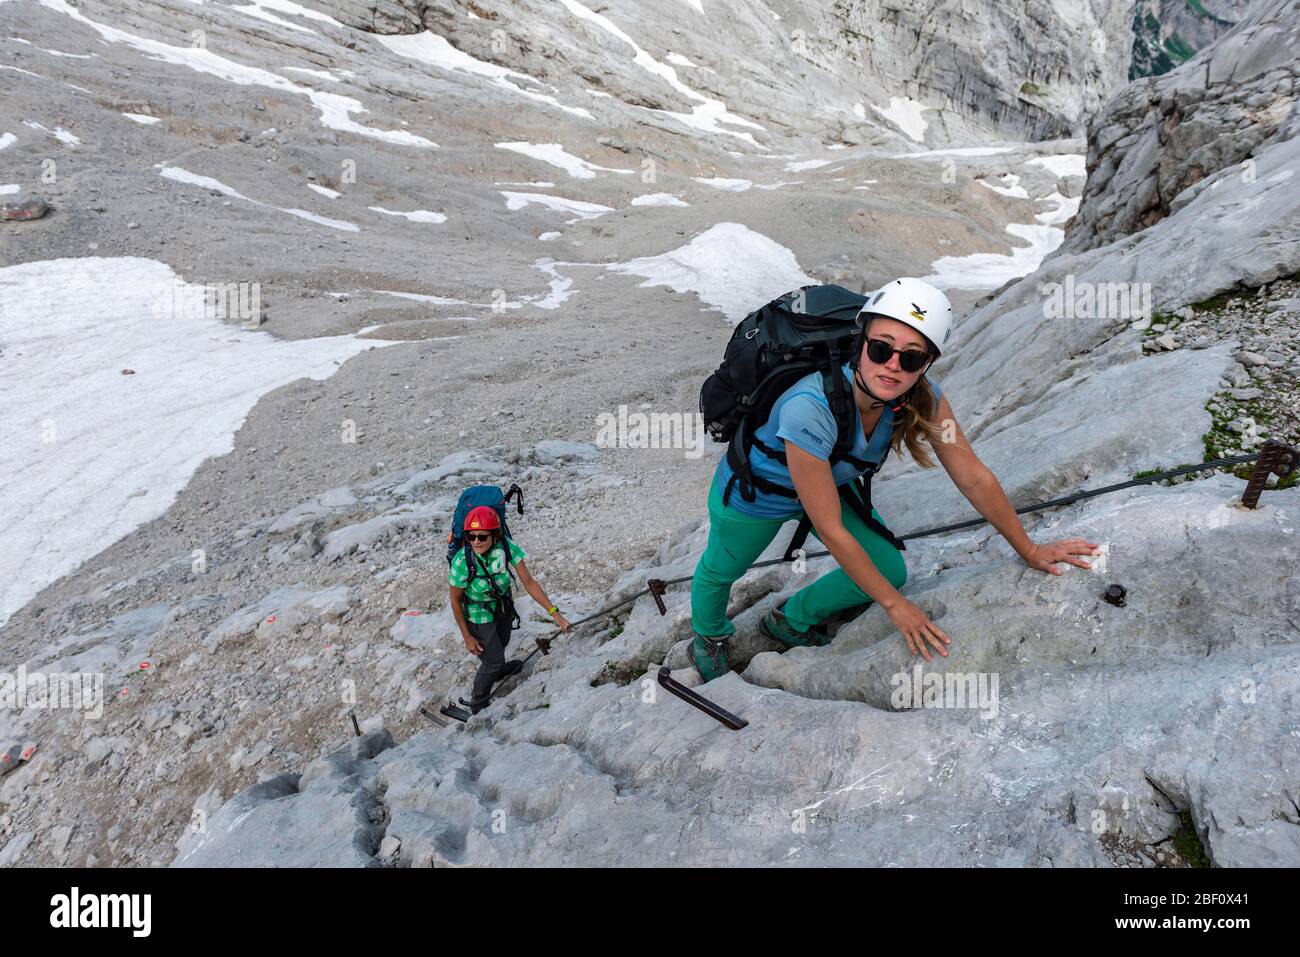 Bergsteigerinnen klettern Felswand, gesicherte Route von Simonyhütte nach Adamekhütte, felsiges alpines Gelände, Salzkammergut, Oberösterreich, Österreich Stockfoto